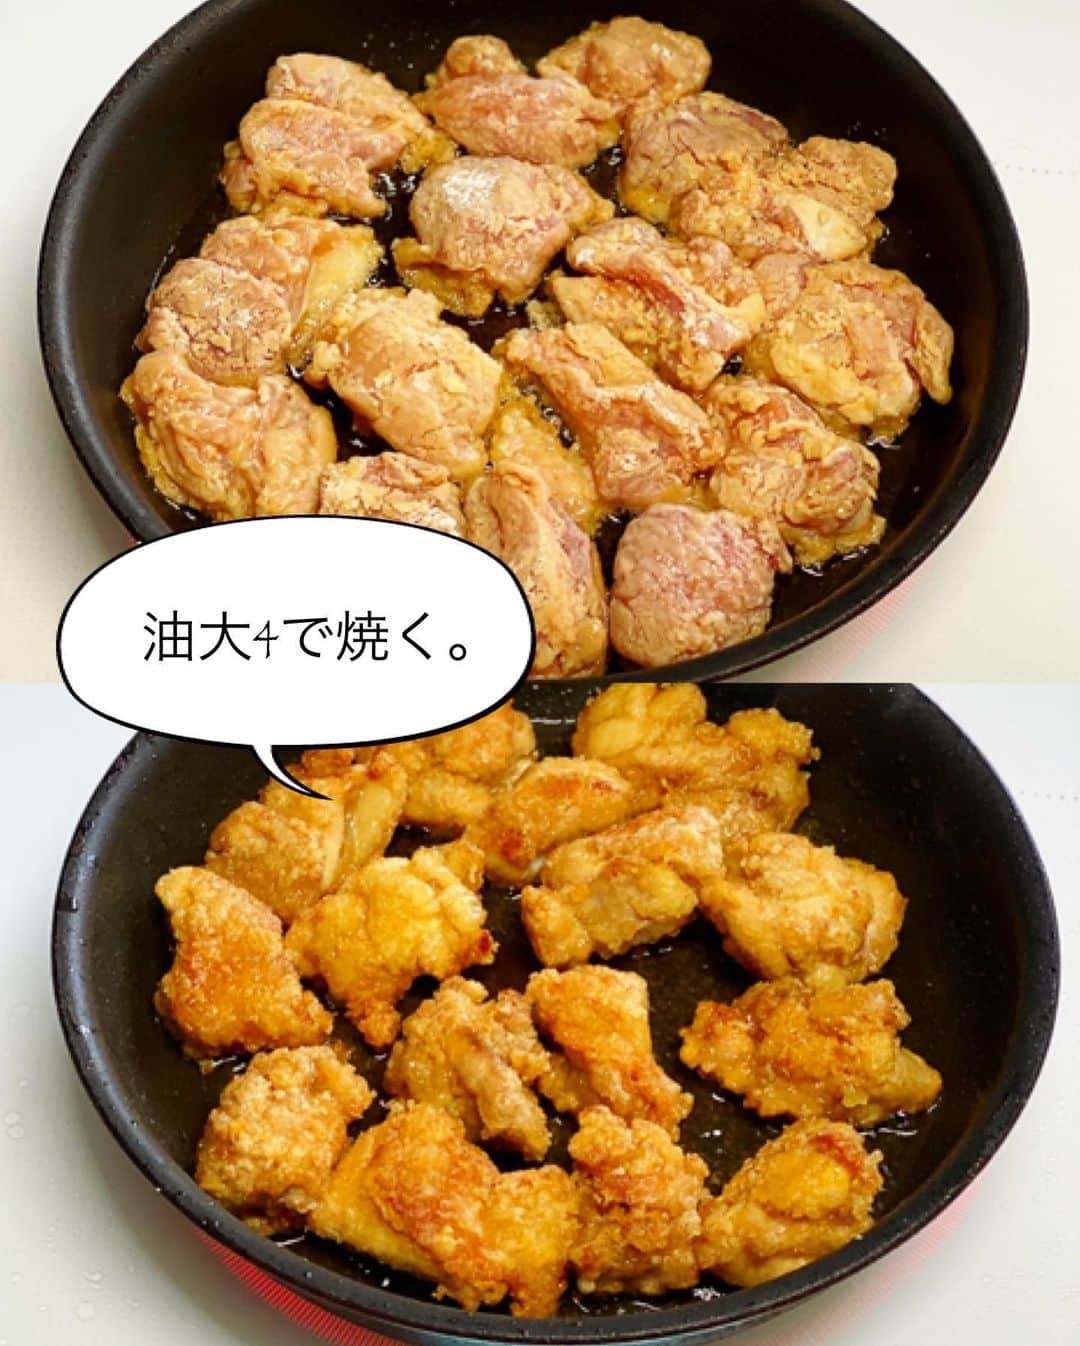 Mizuki【料理ブロガー・簡単レシピ】さんのインスタグラム写真 - (Mizuki【料理ブロガー・簡単レシピ】Instagram)「・﻿ 【レシピ】ーーーーーーーーーーー﻿ ♡主役はタルタル♡鶏の焼き唐♡﻿ ーーーーーーーーーーーーーーーー﻿ ﻿ ﻿ ﻿ おはようございます(*^^*)﻿ ﻿ 今日ご紹介させていただくのは﻿ タルタルソースが主役の唐揚げ♩﻿ 唐揚げは漬け込み不要！﻿ しかもたった大4の油で﻿ 揚げずに焼いて作れますよ♡﻿ ﻿ このタルタルソースはうちの定番♩﻿ 混ぜるだけでとっても美味しくできるので﻿ よかったらお試し下さいね(*´艸`)﻿ この唐揚げはもちろん﻿ エビフライやチキン南蛮とも相性抜群です♩﻿ ﻿ ﻿ ﻿ ーーーーーーーーーーーーーーーーーーーー﻿ 【2〜3人分】﻿ ゆで卵...2個﻿ 玉ねぎ...1/6個﻿ ●マヨネーズ...大4〜5﻿ ●砂糖・酢...各小1﻿ ●塩こしょう...少々﻿ ●(あれば)パセリのみじん切り...適量﻿ 鶏もも肉...大1枚(300g)﻿ ☆醤油・酒...各大1﻿ ☆生姜チューブ...3cm﻿ 片栗粉・サラダ油...各適量﻿ ﻿ 1.(タルタルソースを作る)﻿ ゆで卵は粗みじん切りにする。玉ねぎはみじん切りにし、水に3分晒して水気を絞る。ボウルにゆで卵、玉ねぎ、●を入れて和える。﻿ 2.(焼き唐を作る)﻿ 鶏肉は3cm大に切り、☆を揉み込み片栗粉をまぶす。フライパンにサラダ油大4を入れて中火で熱し、2を返しながら焼いて火を通す(7〜8分)。﻿ 3.油を切って器に盛り、1のタルタルソースをかける。﻿ ーーーーーーーーーーーーーーーーーーーー﻿ ﻿ ﻿ ﻿ 《ポイント》﻿ ♦︎玉ねぎは水に晒すと辛味が抜けます♩﻿ ♦︎鶏むね肉で作る場合は、全体をフォークで刺し、1cm厚さの削ぎ切りにして下さい♩焼き時間は短くなります♩﻿ ﻿ ﻿ ﻿ ﻿ ﻿ ↓ ↓ ↓﻿ 先日はインスタライブをご視聴下さり﻿ 誠にありがとうございました😊﻿ 皆さんとやり取りしながらのライブ﻿ とても楽しかったです🥰﻿ 序盤に猫(マノさん)🐈が鳴く(笑)﻿ オイルを入れ忘れるwなど﻿ 見返したら笑ってしまいました😂﻿ (お騒がせしてすみません🙇‍♀️)﻿ ご紹介させていただいたレモンパウンドは﻿ その後たくさん作っていただけたようで﻿ ご投稿を嬉しく拝見しております💓﻿ ﻿ そしてその中でお話させていただいた通り﻿ ただ今繁忙期に入っておりますので﻿ 8月までは更新が減ってしまいそうです•••﻿ ﻿ この間過去のレシピをストーリーに上げたり﻿ 皆さんが投稿して下さったストーリーを﻿ 私の方でシェアさせてもらったり、と、﻿ そんなこともしたいなって思っています♩﻿ (やり方を勉強しなければ😂)﻿ ﻿ とはいえ、今日のようにできる時には﻿ 更新させていただきたいと思いますので﻿ どうぞお付き合い下さいませ🥰﻿ 今後ともよろしくお願いしますm(_ _)m💓﻿ ﻿ ﻿ ﻿ ﻿ ﻿ ﻿ ﻿ 🆕🆕🆕🆕🆕🆕🆕🆕🆕🆕﻿ 【🎥YouTube更新しました🎥】﻿ (＊ハイライトから飛べます♩)﻿ ↓﻿ 🍆レンジで簡単！焼肉のたれで麻婆なす﻿ 🍕世界一簡単なホケミピザ﻿ 🧁ホケミで！クッキー&クリームマフィン﻿ 🍳揉んで焼くだけ！やみつきチキン﻿ 🌭材料4つ！アメリカンドッグ﻿ ﻿ ﻿ ﻿ ﻿ ﻿ 5刷重版しました🔻﻿ 本当にありがとうございます🙇‍♀️﻿ ＿＿＿＿＿＿＿＿＿＿＿＿＿＿＿＿＿＿＿﻿ 📕\ \ 新刊発売中 / /📕﻿ 簡単・時短！ 毎日のごはんがラクになる﻿ ✨🦋 【 #Mizukiの今どき和食 】🦋✨﻿ ＿＿＿＿＿＿＿＿＿＿＿＿＿＿＿＿＿＿＿﻿ なるべく少ない材料で﻿ 手間も時間も省きながら﻿ 簡単にできるおいしい和食レシピ♩﻿ 簡単に失敗なくマスターできる一冊で﻿ もっと気軽に、カジュアルに﻿ 和食を楽しんで下さいね(*^^*)﻿ ＿＿＿＿＿＿＿＿＿＿＿＿＿＿＿＿＿＿＿﻿ ﻿ ﻿ ﻿  ＿＿＿＿＿＿＿＿＿＿＿＿＿＿＿＿＿﻿ 🎀6刷重版しました🎀﻿ 混ぜて焼くだけ。はじめてでも失敗しない！﻿ 【#ホットケーキミックスのお菓子 】﻿ ﻿ 一冊まるっとホケミスイーツ♩﻿ 普段のおやつから﻿ 特別な日にも使えるレシピを﻿ この一冊に詰め込みました(*^^*)﻿ ホットケーキミックスを使えば﻿ 簡単に本格的なお菓子が作れますよ♡﻿ ＿＿＿＿＿＿＿＿＿＿＿＿＿＿＿＿＿﻿ ﻿ ⭐️ストーリー、ハイライト、プロフ画面に﻿ 本のURLを貼らせていただいております♩﻿ →(@mizuki_31cafe )﻿ ﻿ ﻿ ﻿ ﻿ #揚げない#唐揚げ#タルタルソース#鶏の唐揚げ#万能#Mizuki#簡単レシピ#時短レシピ#節約レシピ#料理#レシピ#フーディーテーブル#マカロニメイト#おうちごはん#デリスタグラマー#料理好きな人と繋がりたい#おうちごはん#写真好きな人と繋がりたいlover#foodpic#cooking#recipe#lin_stagrammer#foodporn#yummy#主役はタルタル鶏の焼き唐m」7月8日 7時27分 - mizuki_31cafe